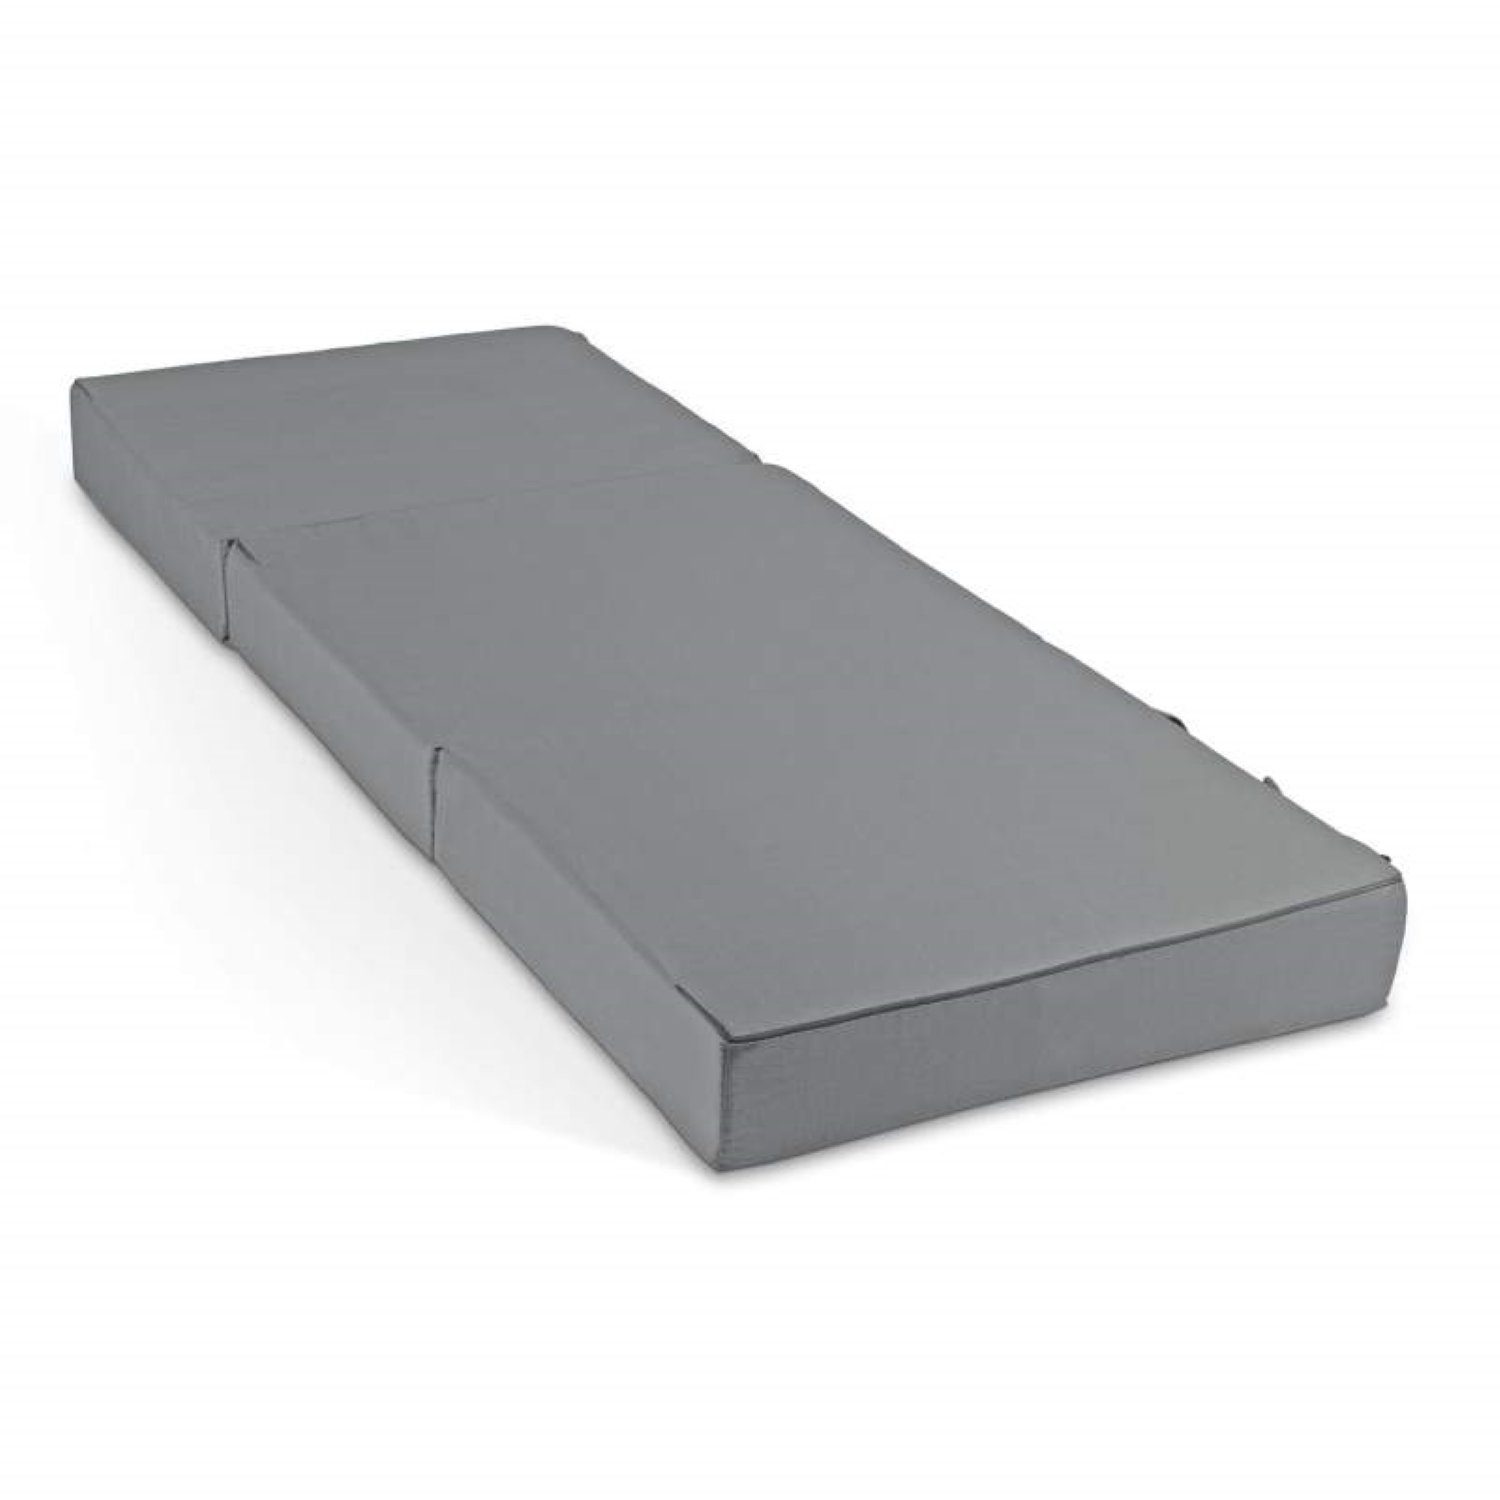 Klappmatratze Gästematratze, Bestschlaf, 15 cm hoch, (mit praktischen Tragegriffen) Grau